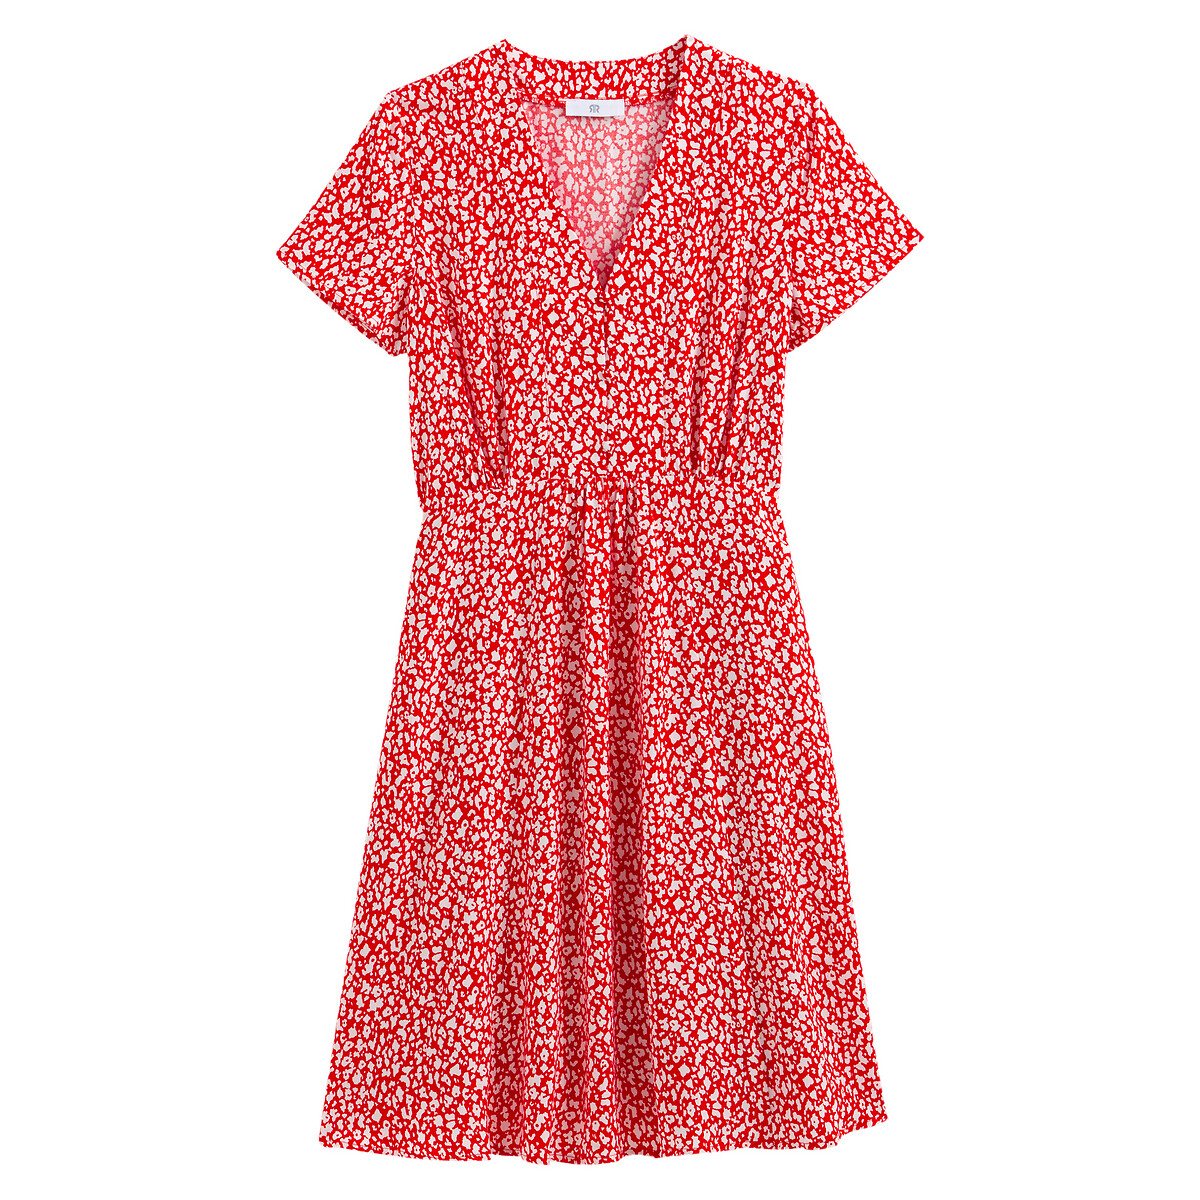 Платье LaRedoute С V-образным вырезом короткими рукавами с принтом 36 (FR) - 42 (RUS) красный, размер 36 (FR) - 42 (RUS) С V-образным вырезом короткими рукавами с принтом 36 (FR) - 42 (RUS) красный - фото 5